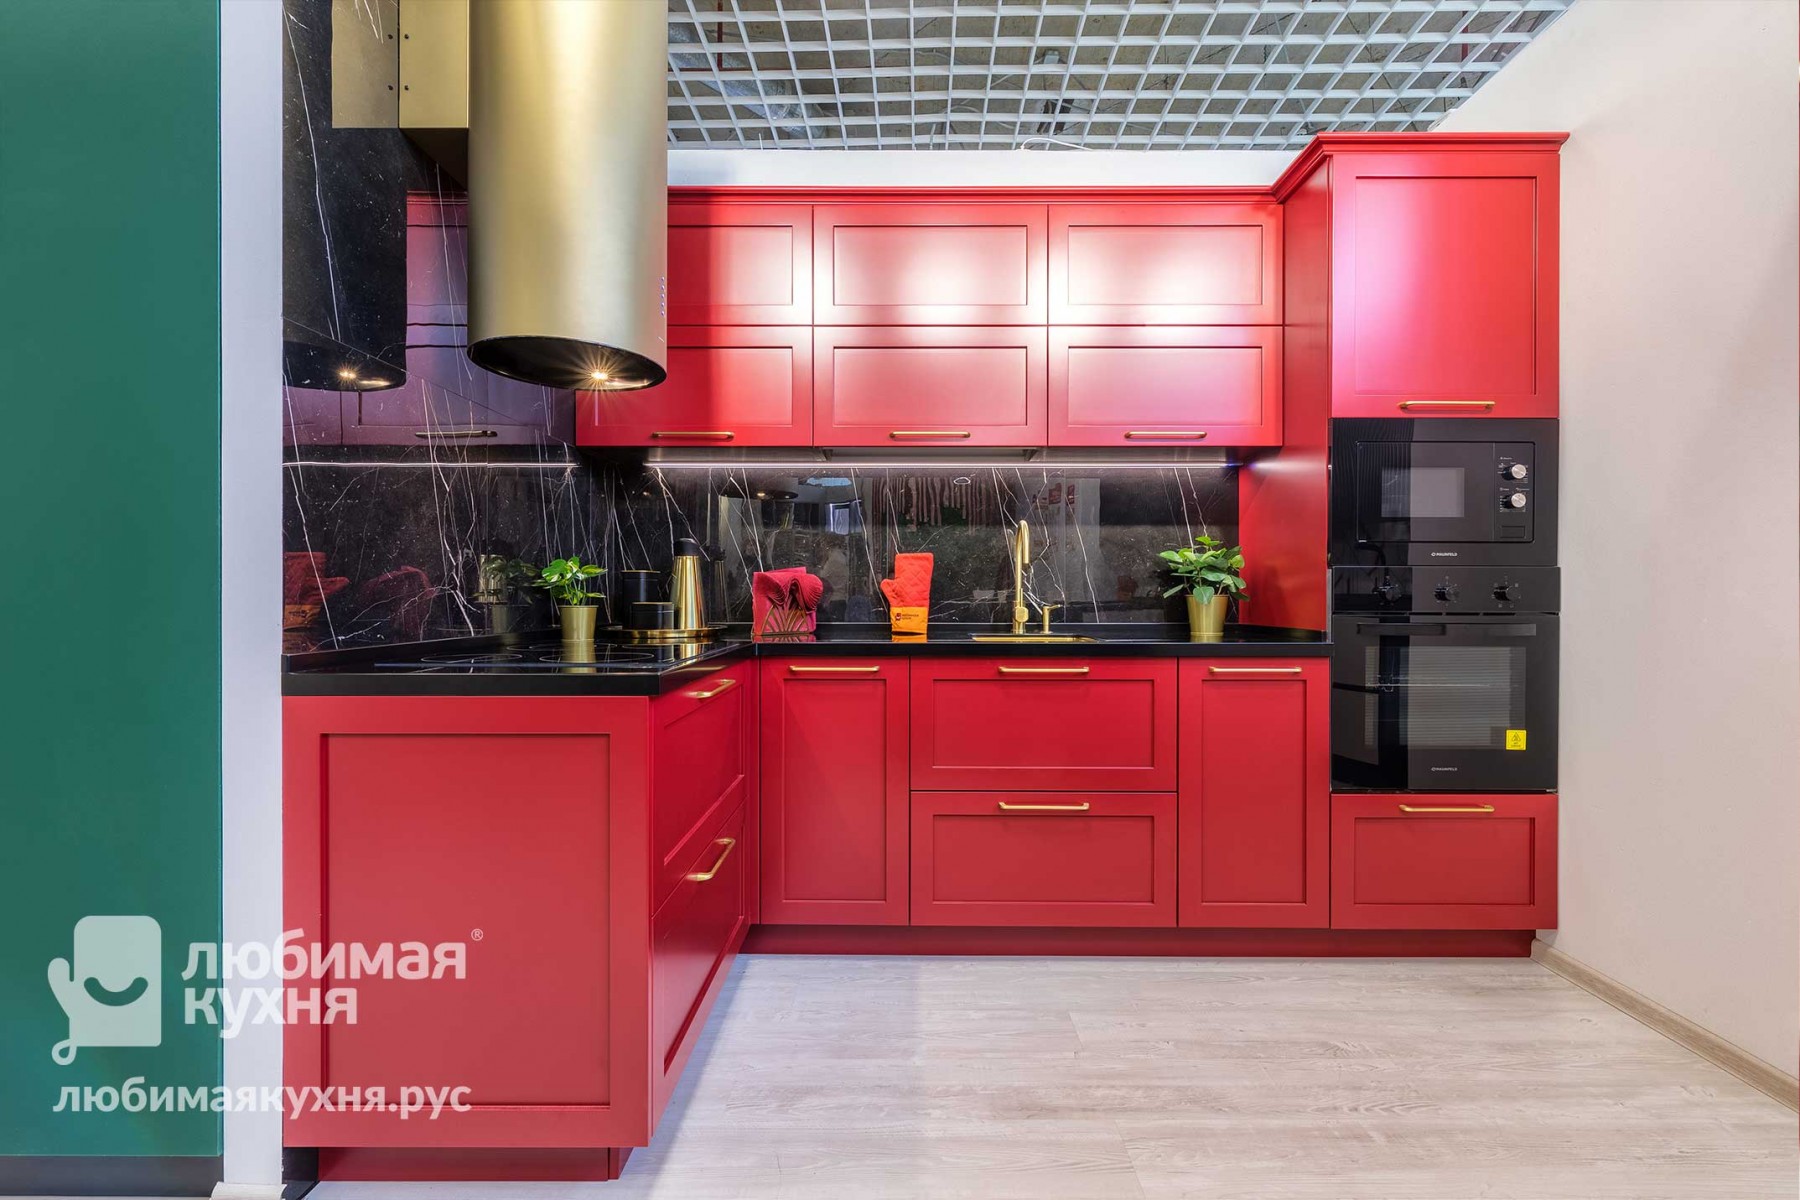 Кухонные гарнитуры недорого, кухни от производителя в Санкт-Петербурге